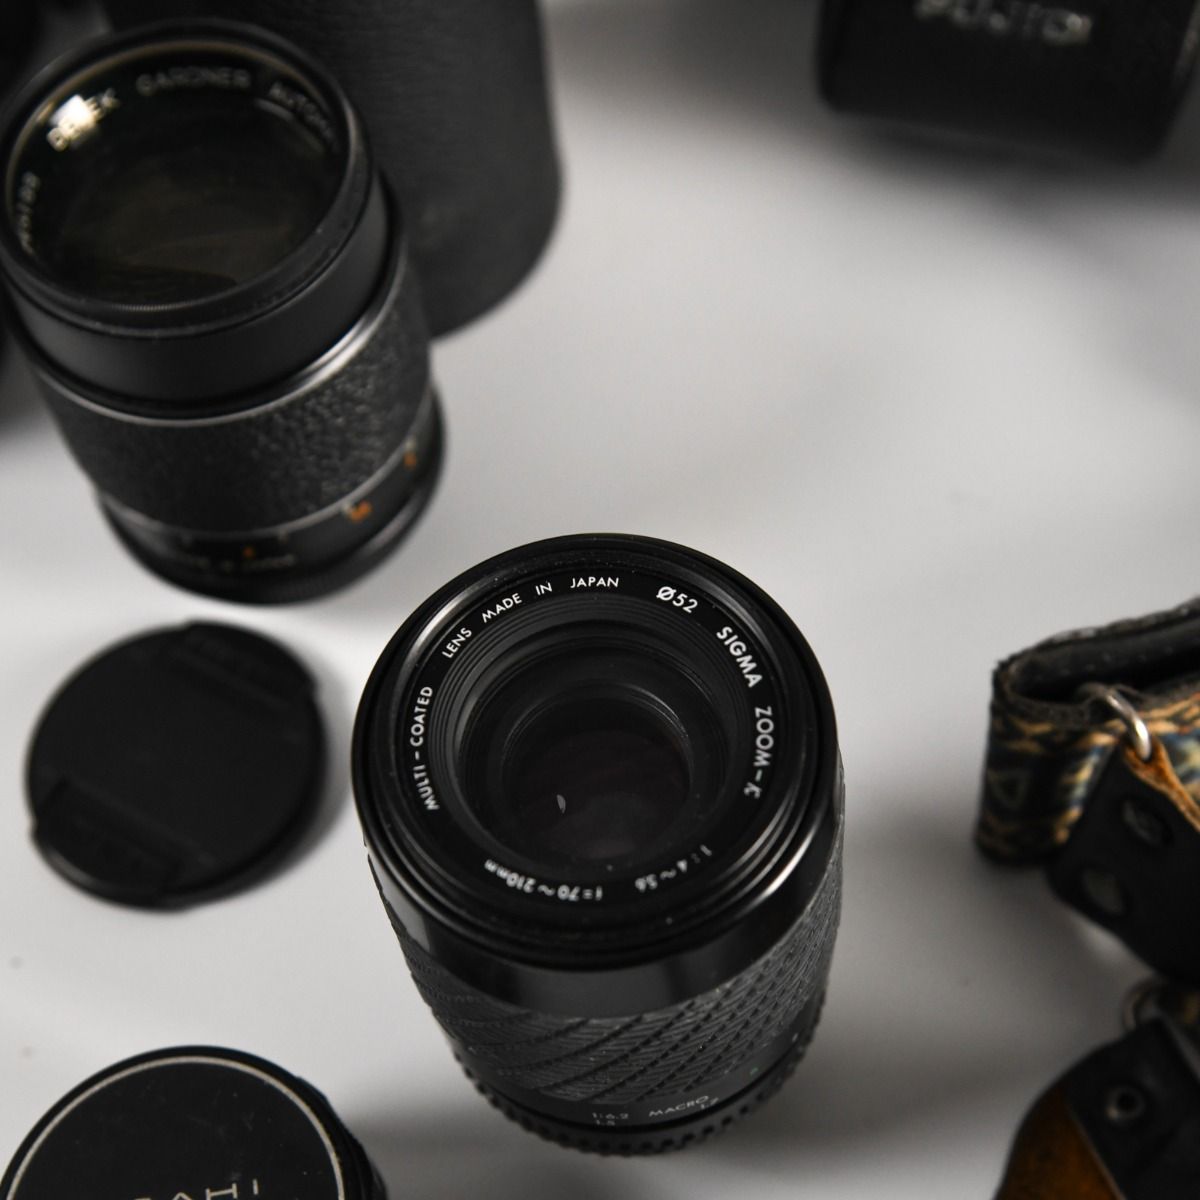 Fujica ST605N 35mm SLR Film Camera Kit With 4 Lenses